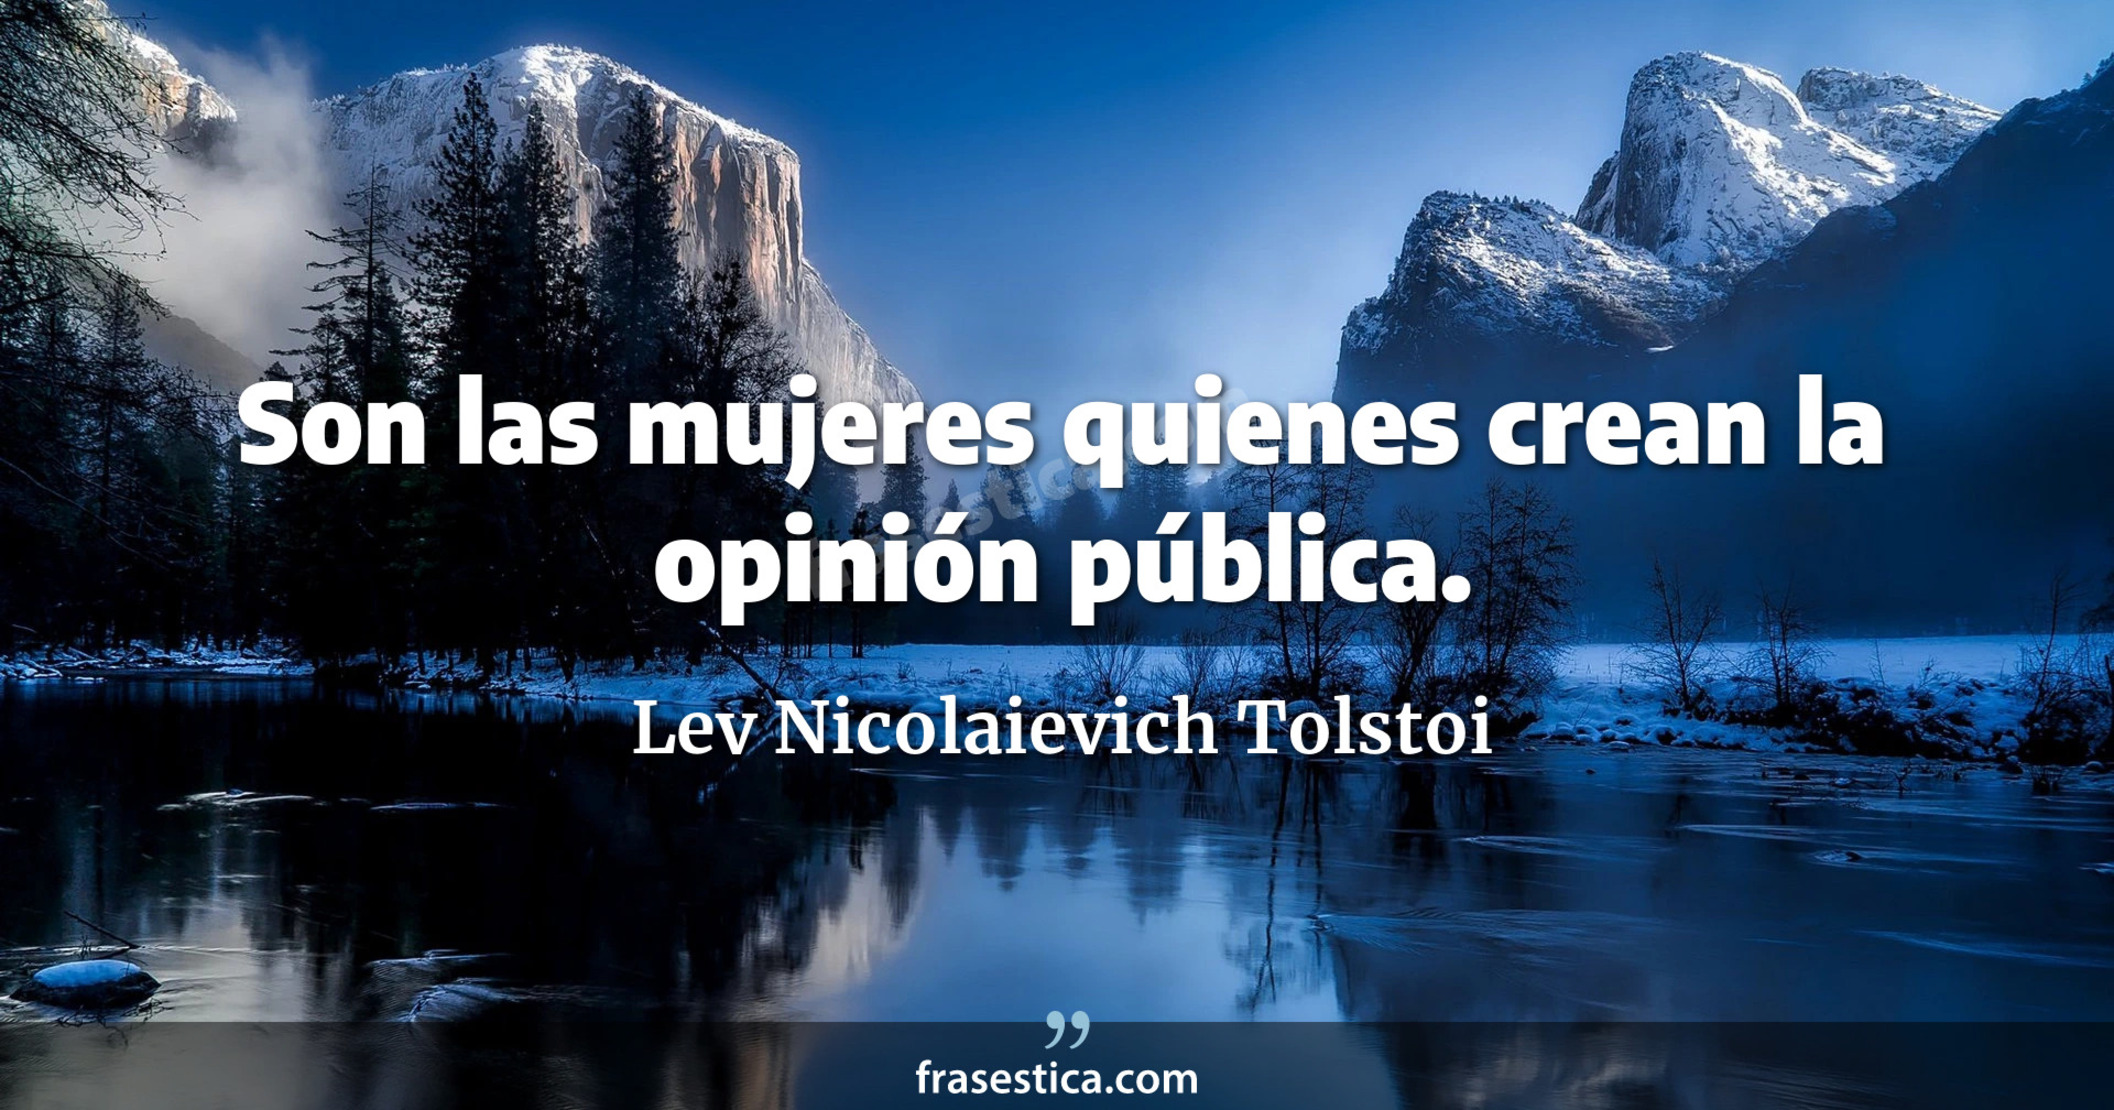 Son las mujeres quienes crean la opinión pública. - Lev Nicolaievich Tolstoi